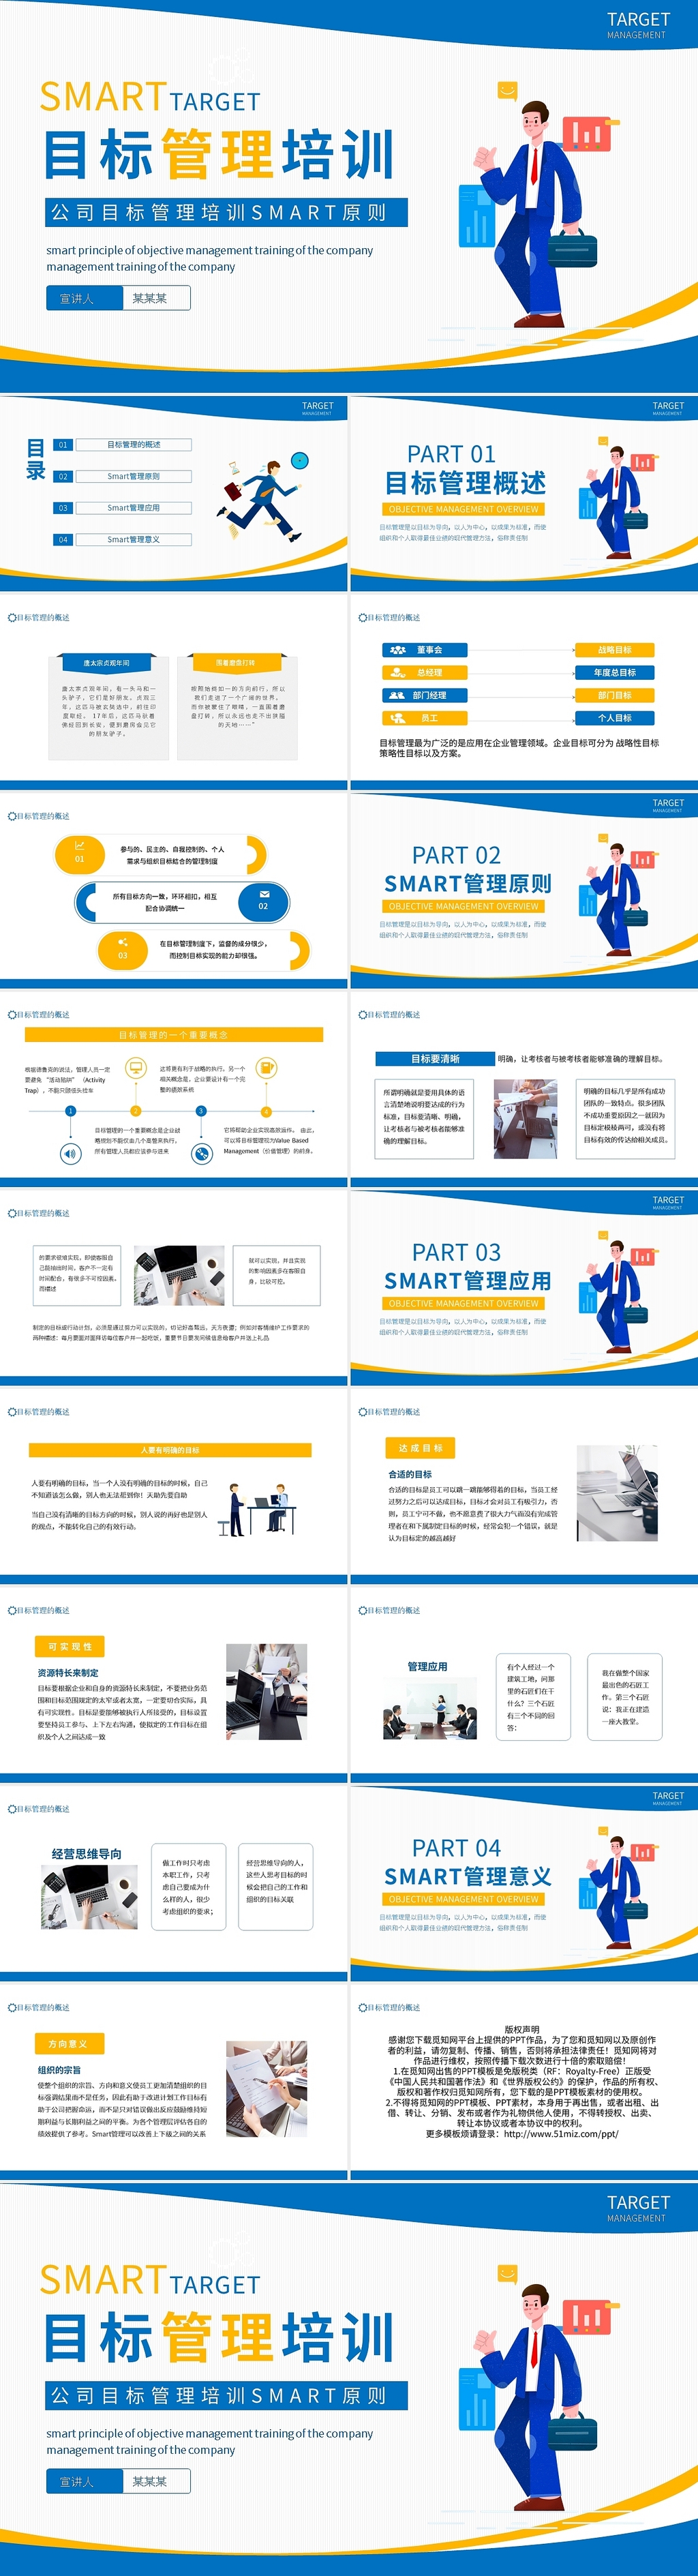 黄蓝简约公司目标管理培训SMART原则PPT模板宣传PPTsmart原则